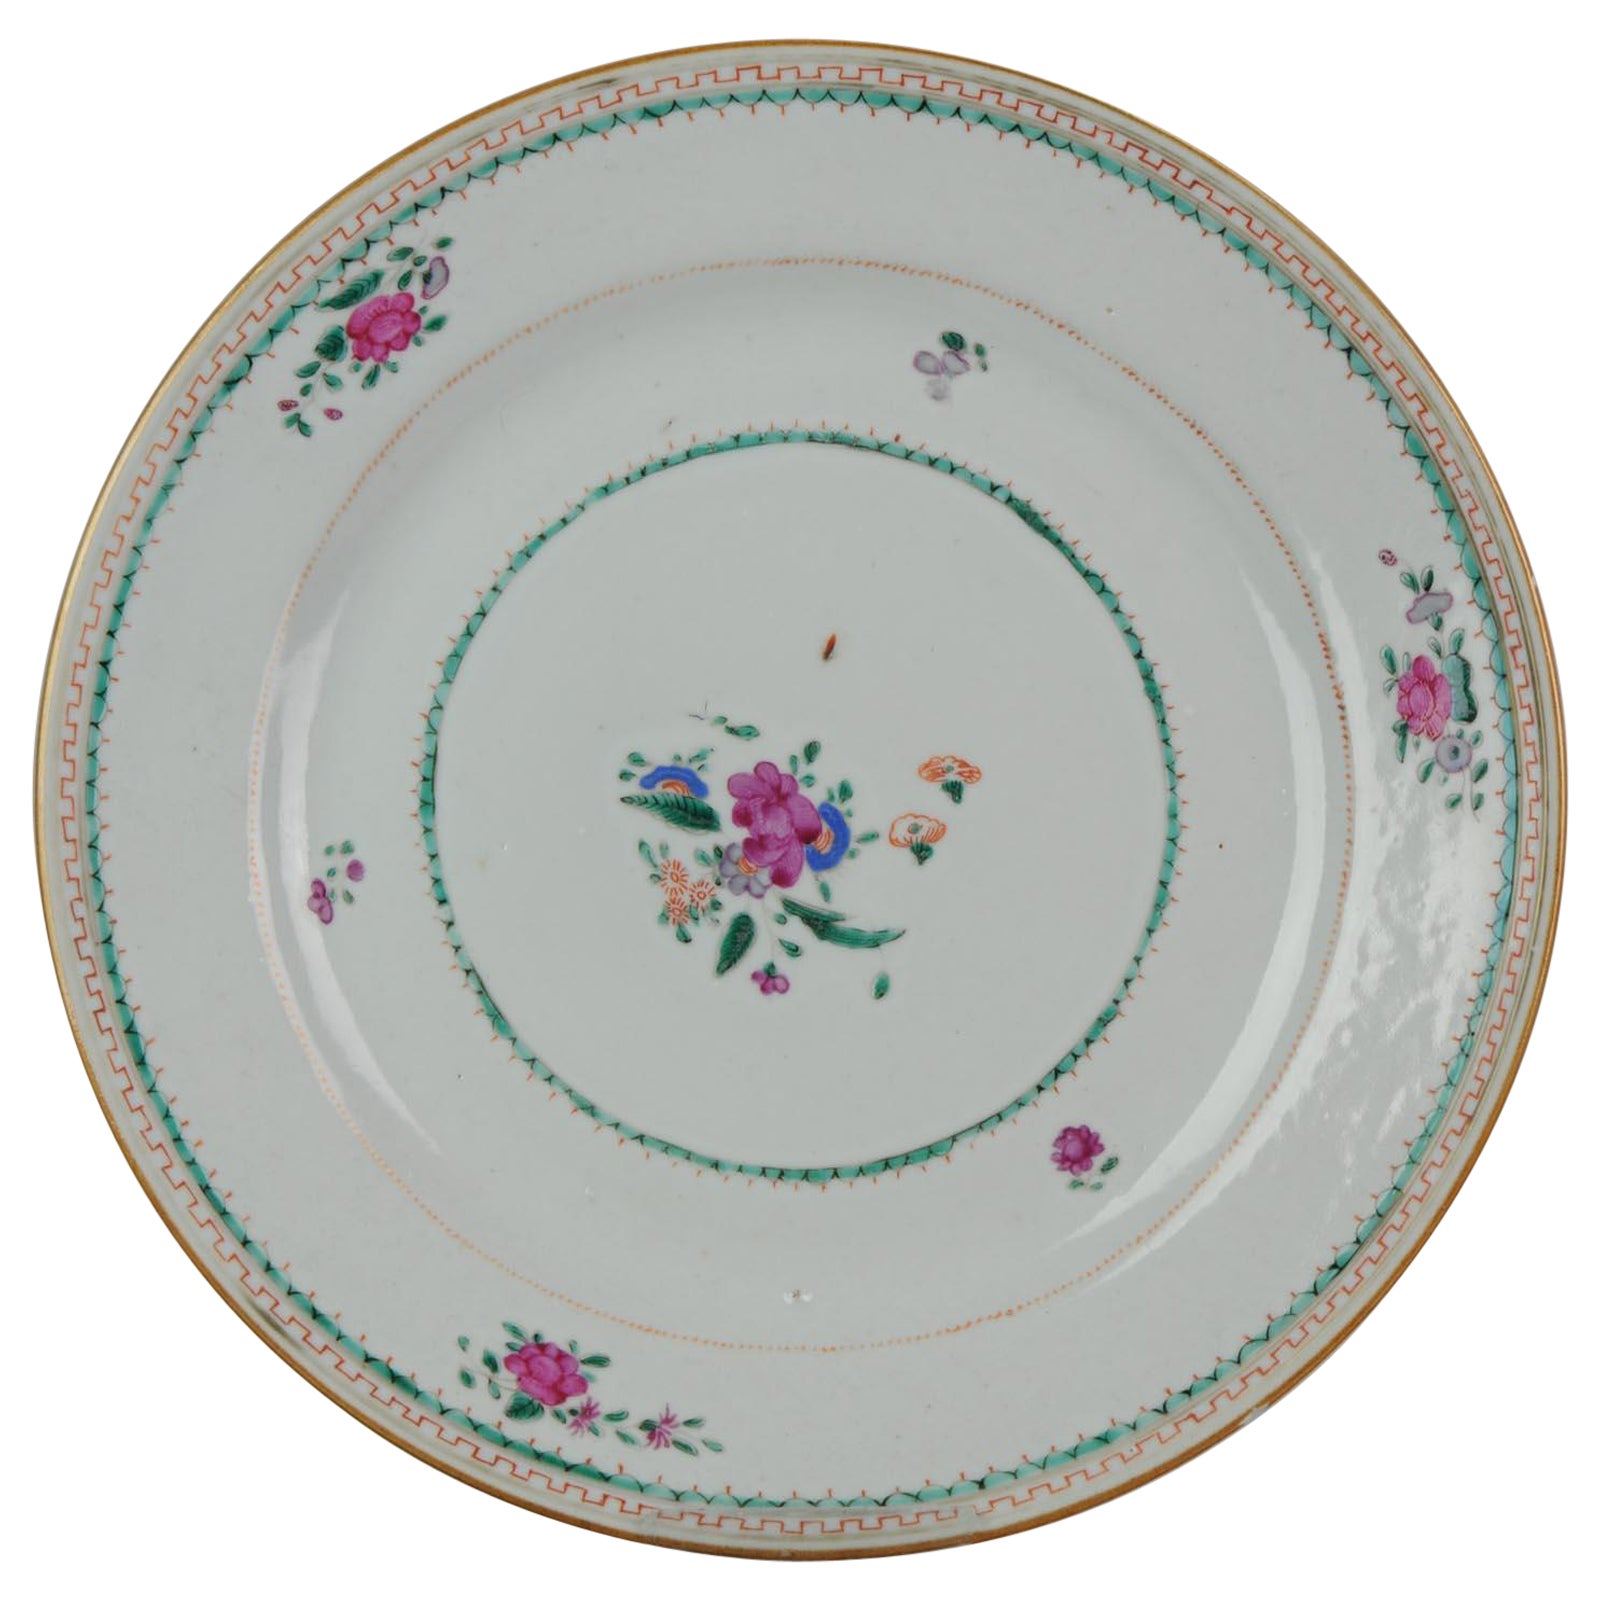 Antique Plate Flowers Fencai Porcelain Famille Rose China Qianlong, 1736-1795